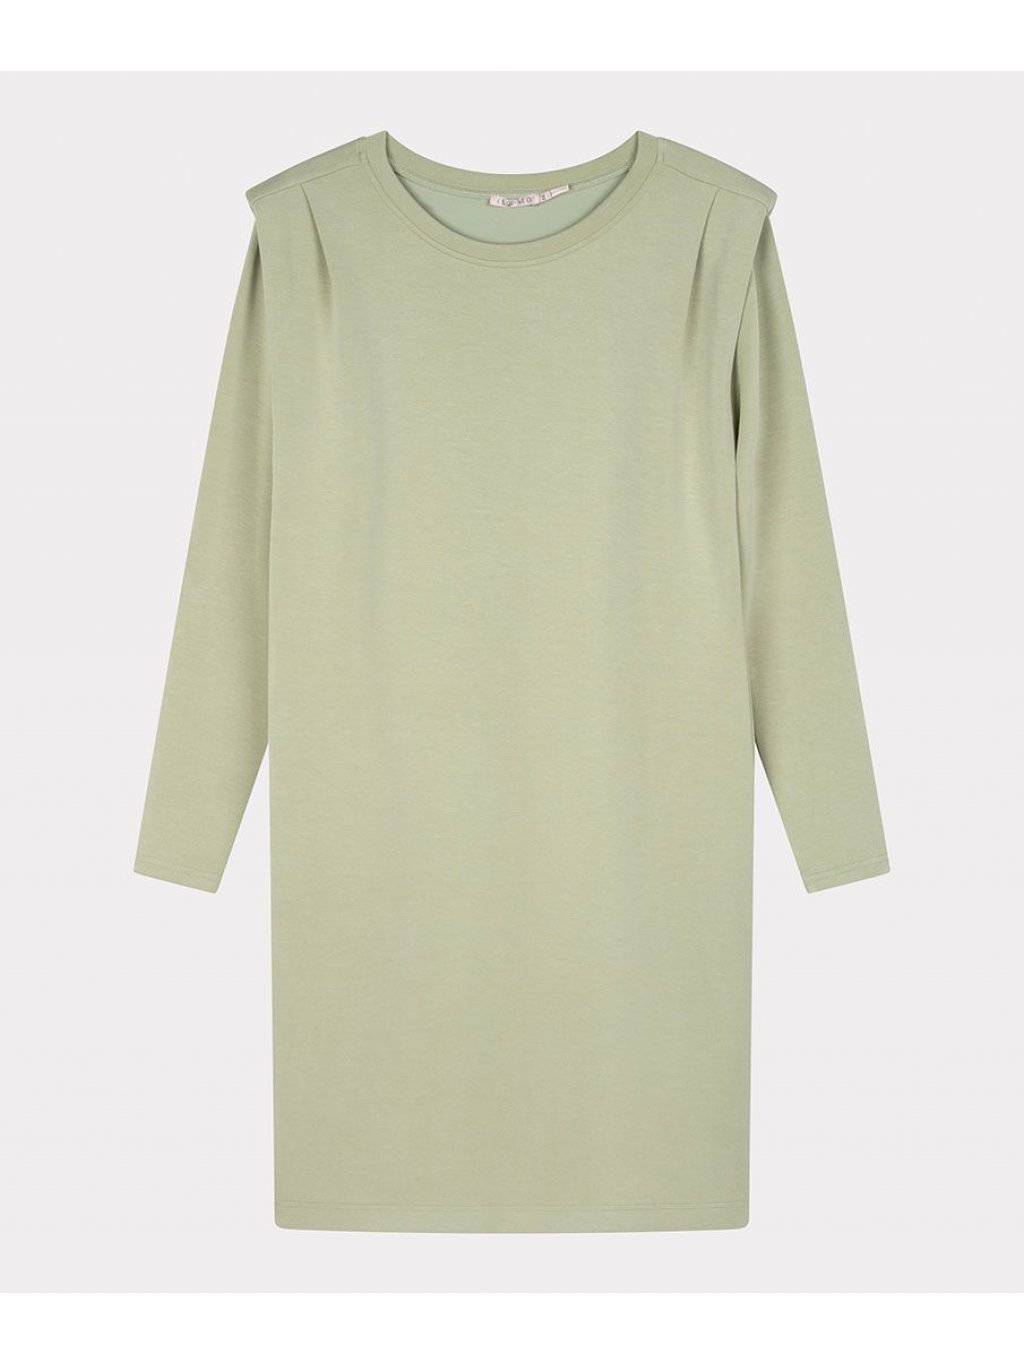 Šaty Esqualo 5000 jemně zelené z modalu